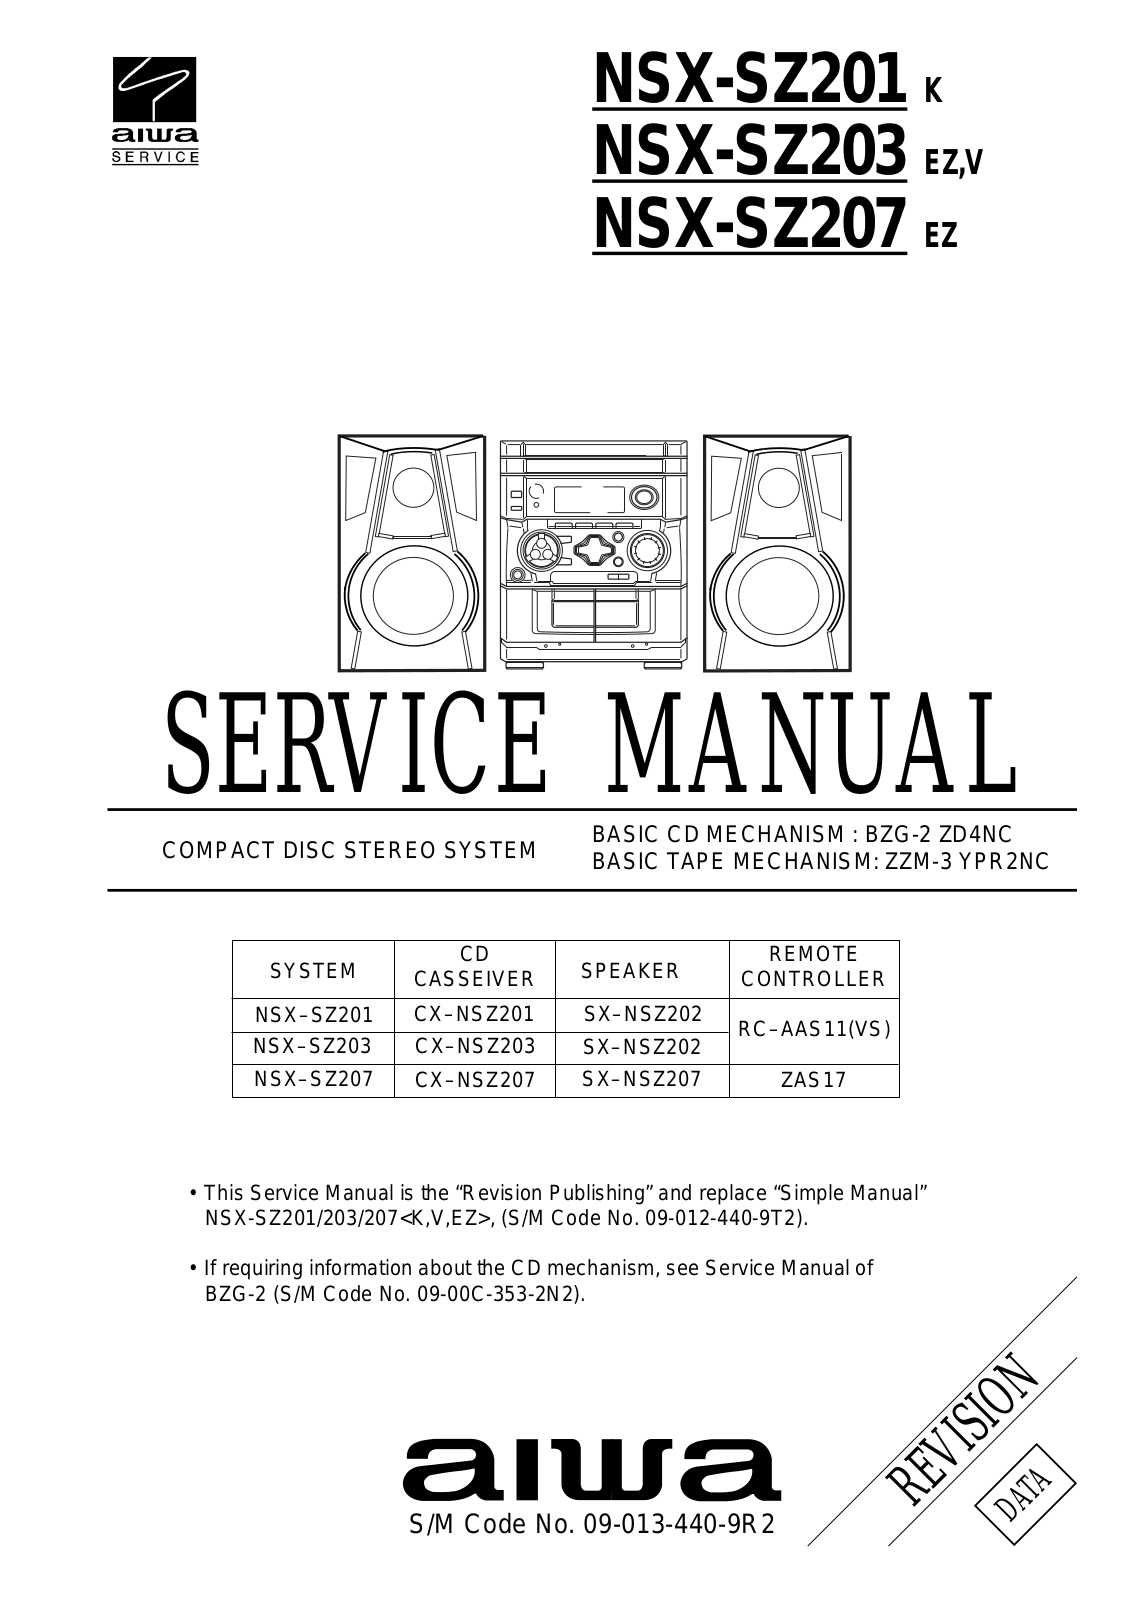 Aiwa NSX-SZ201, NSX-SZ203, NSX-SZ207 Service manual